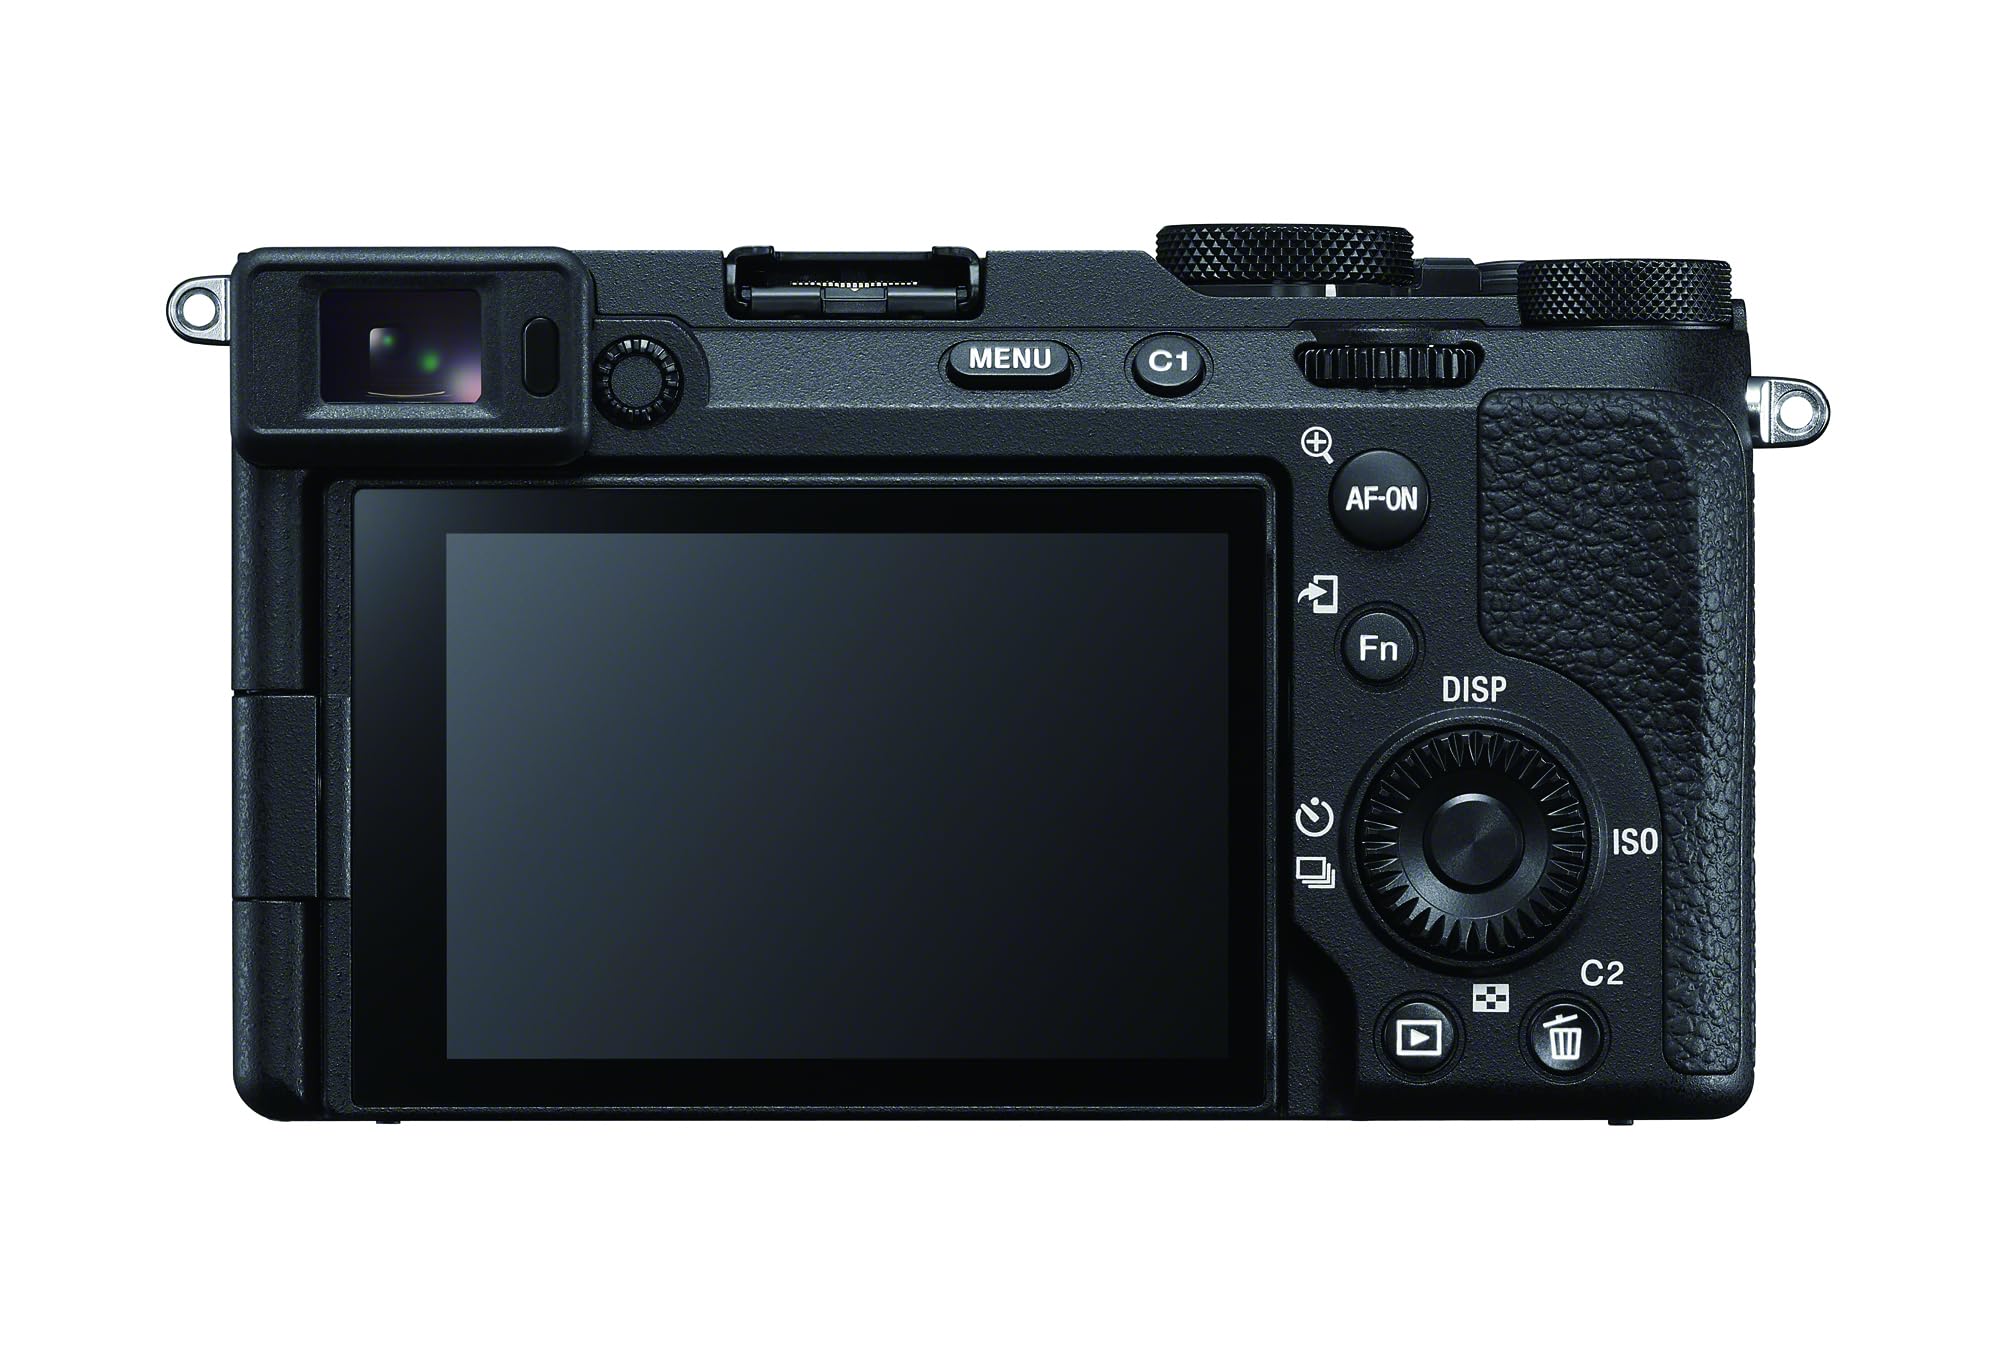 Alpha 7C II Full-Frame Interchangeable Lens Camera - Black